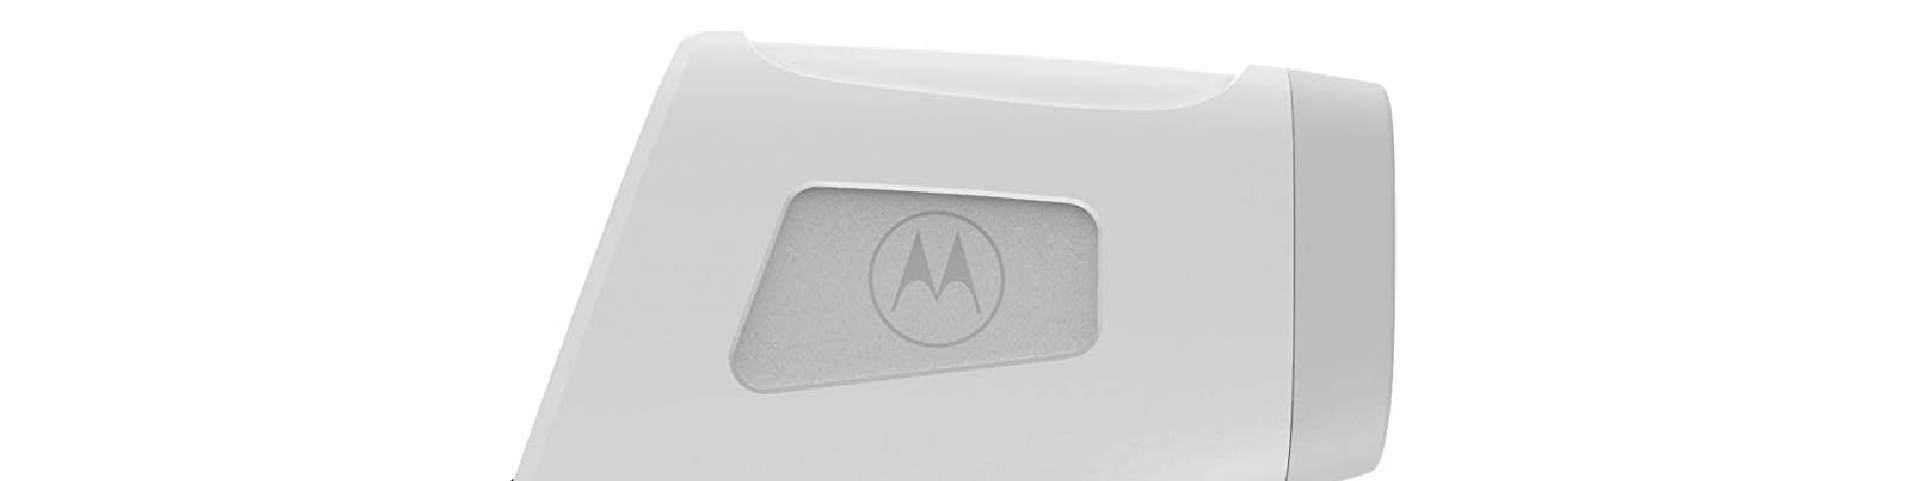 Motorola termometro blanco